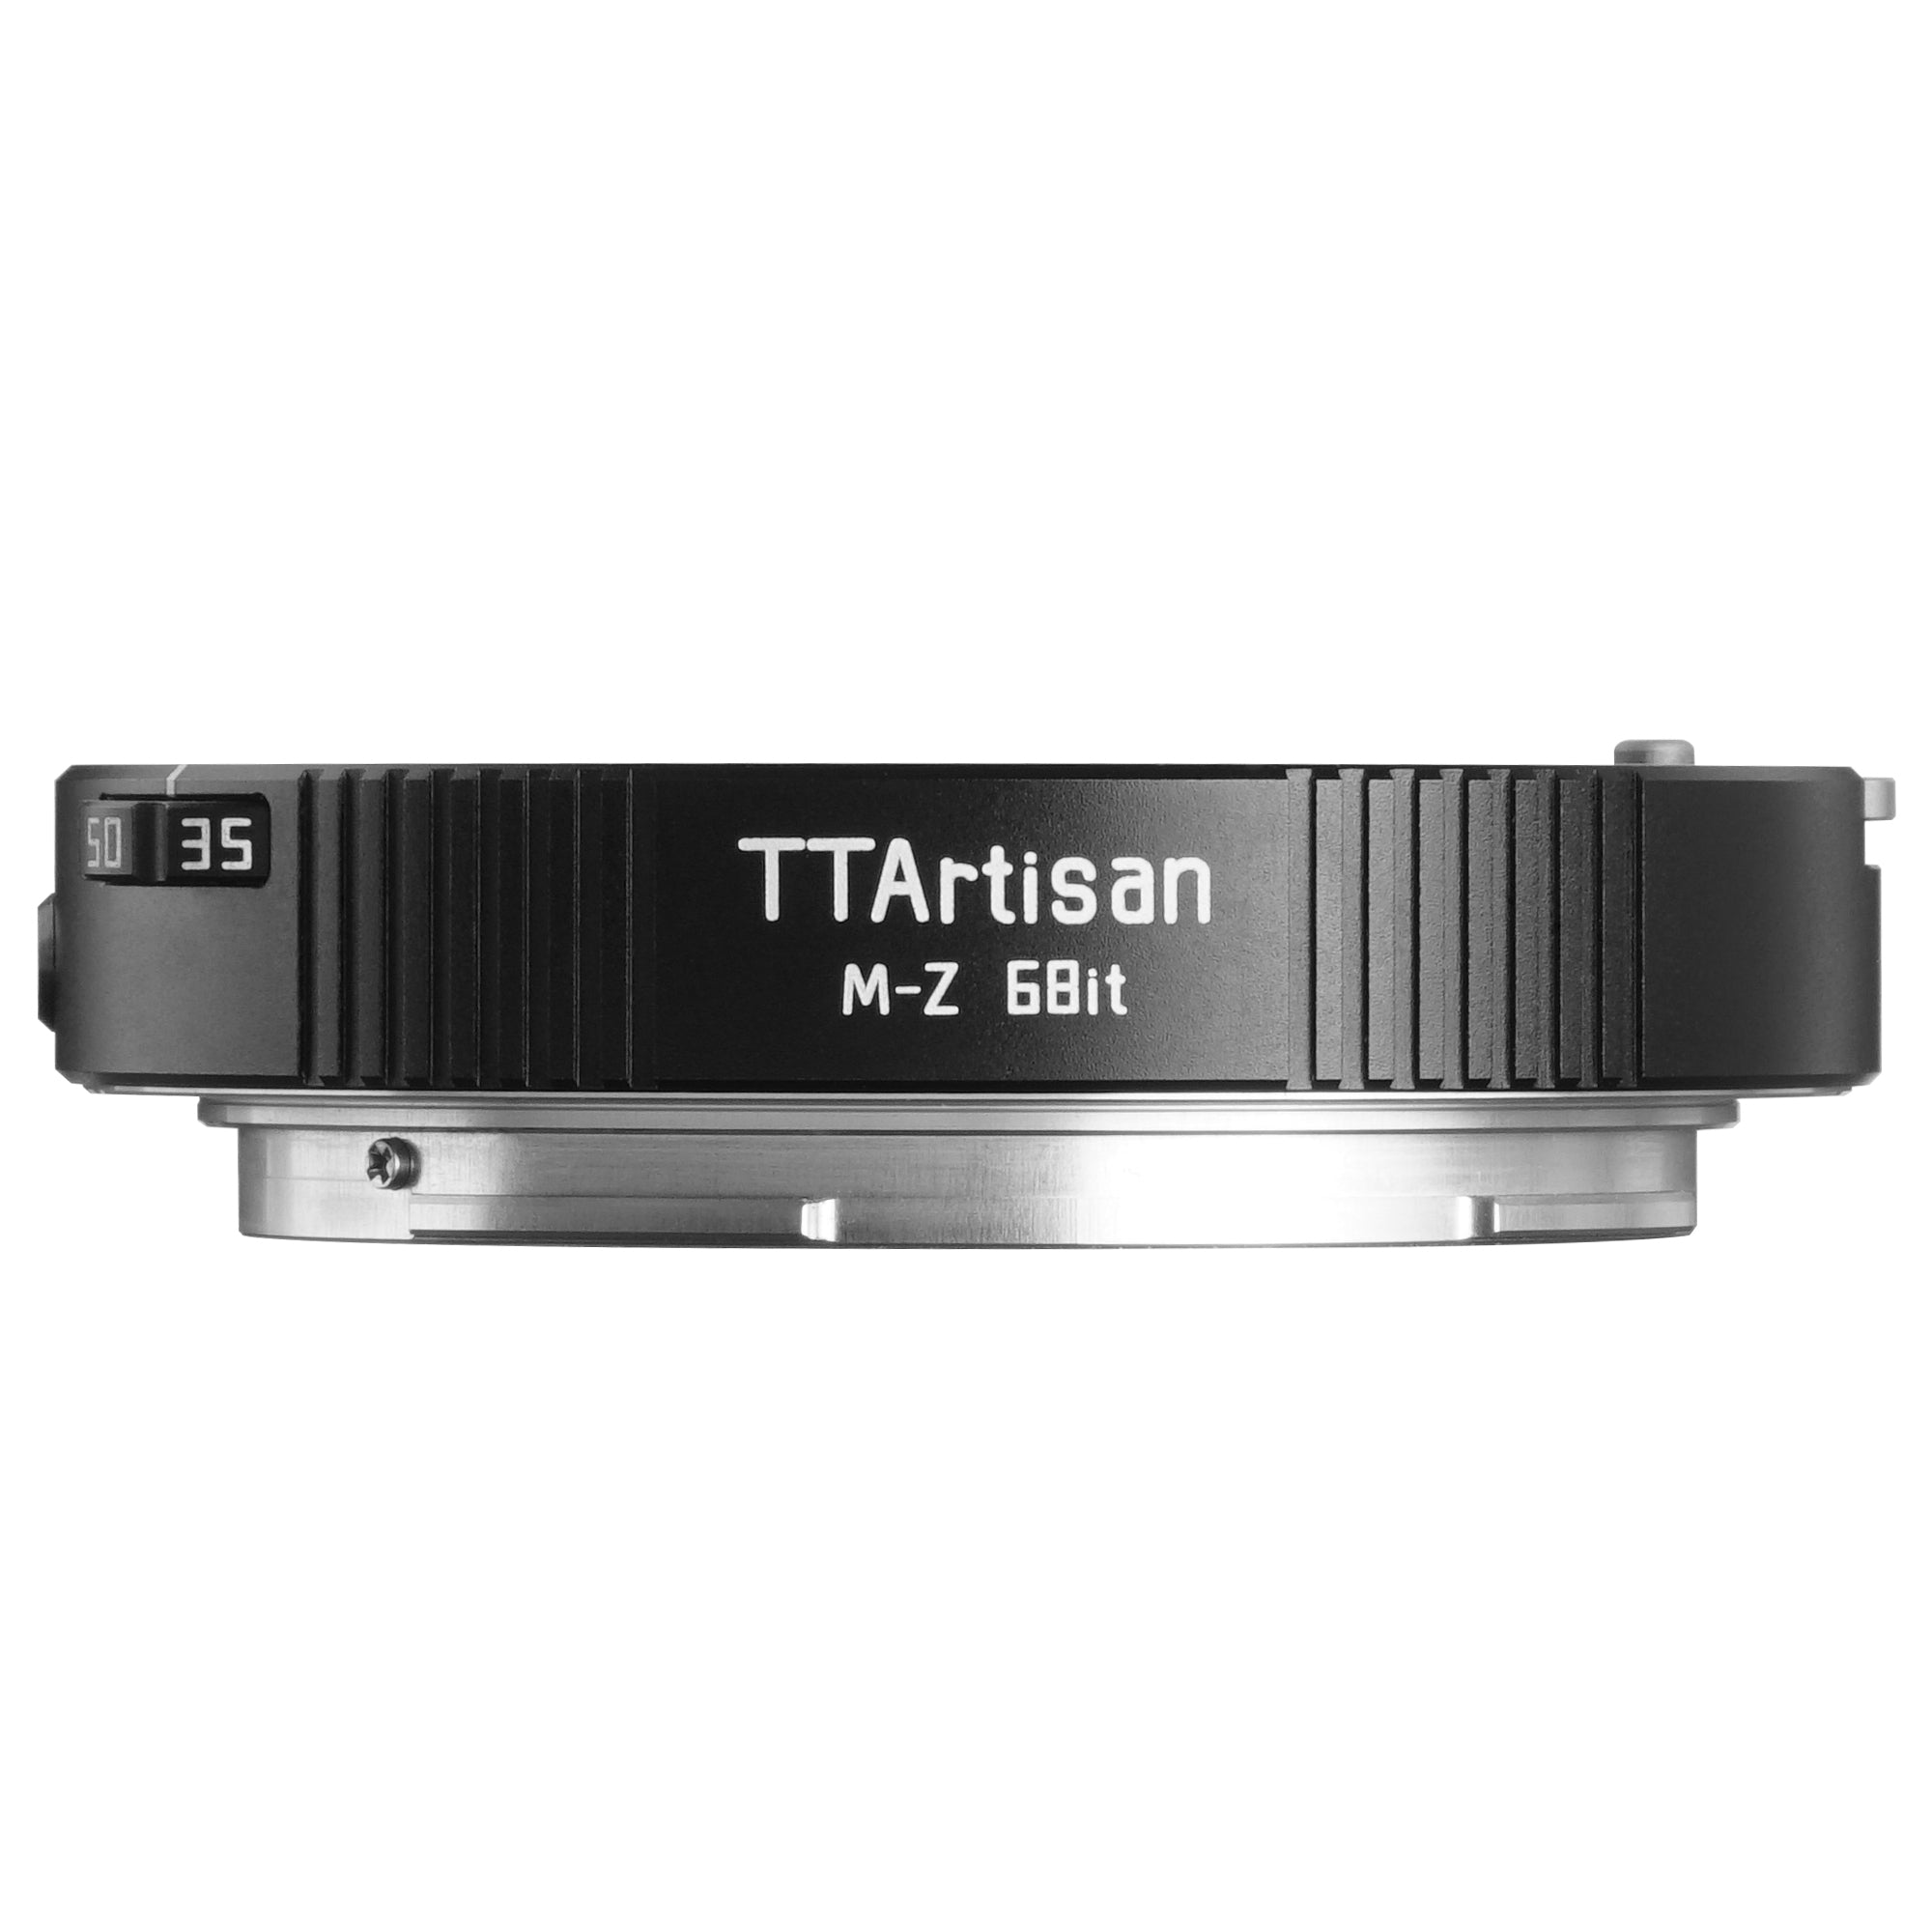 TTArtisan Leica M to Nikon Z 6Bit Adapter